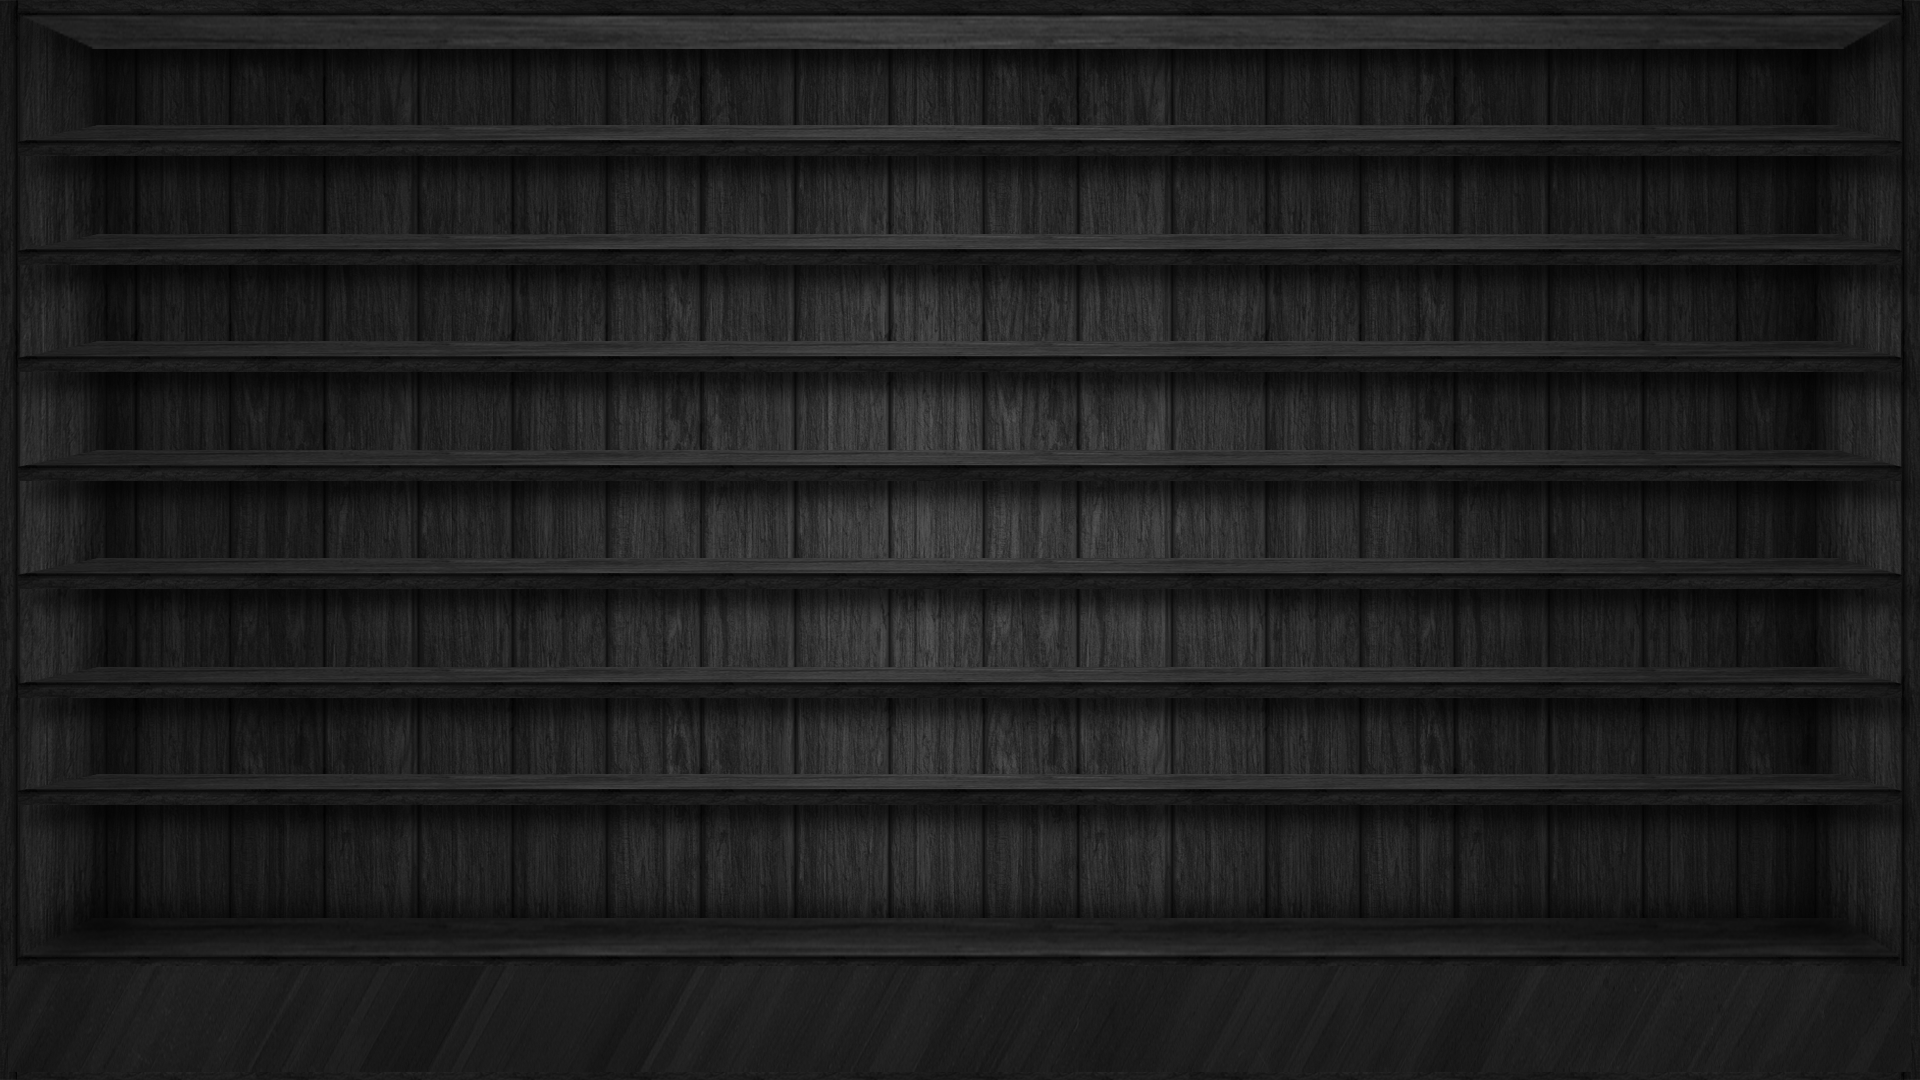 Shelves Wallpapers on Shelves-Walpapers - DeviantArt